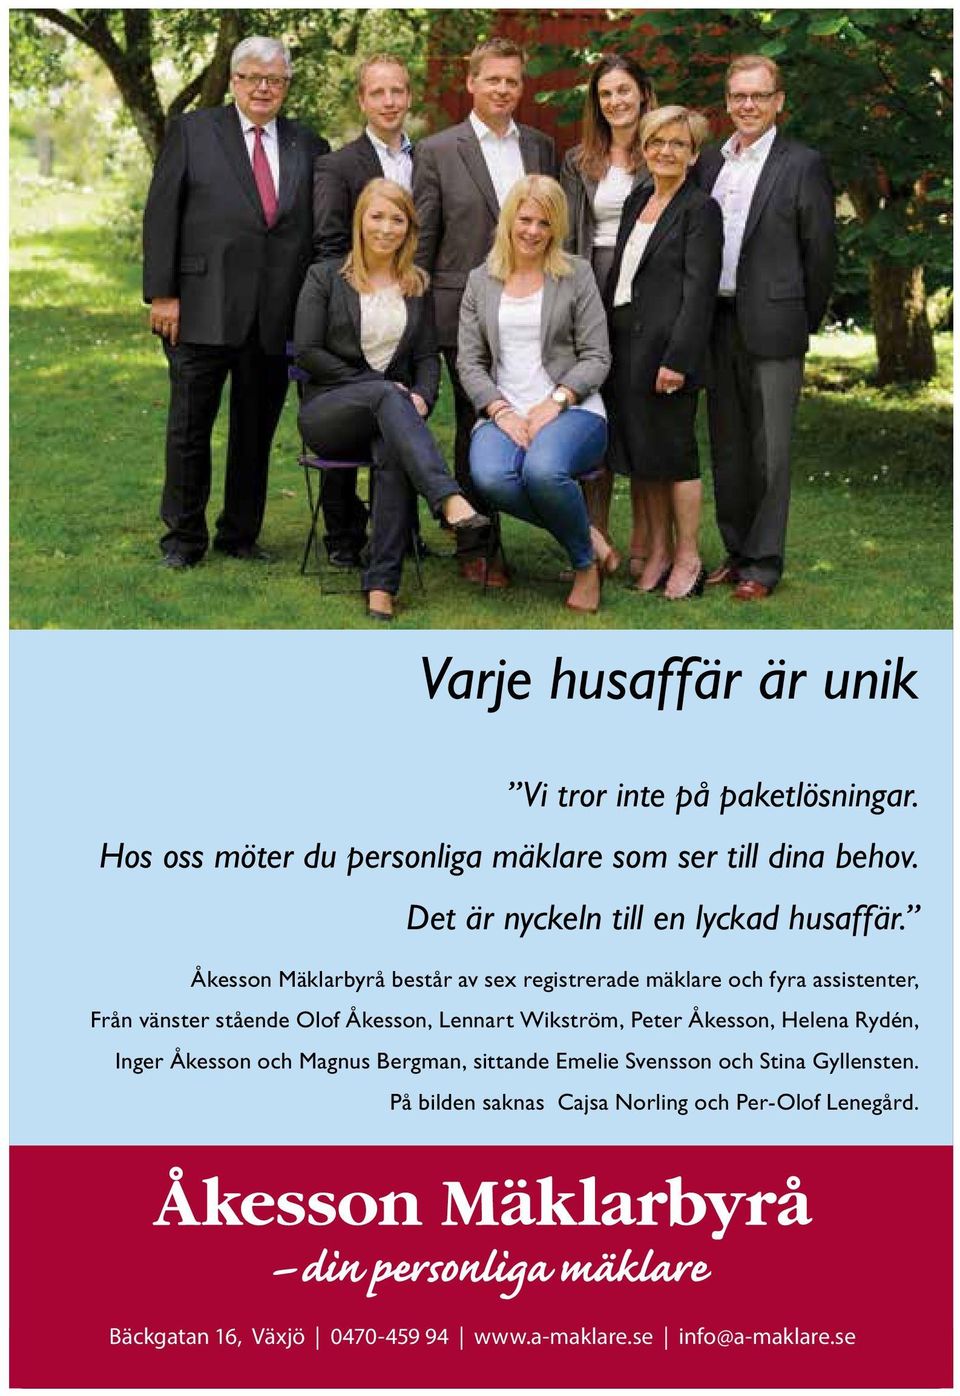 Åkesson Mäklarbyrå består av sex registrerade mäklare och fyra assistenter, Från vänster stående Olof Åkesson, Lennart Wikström,